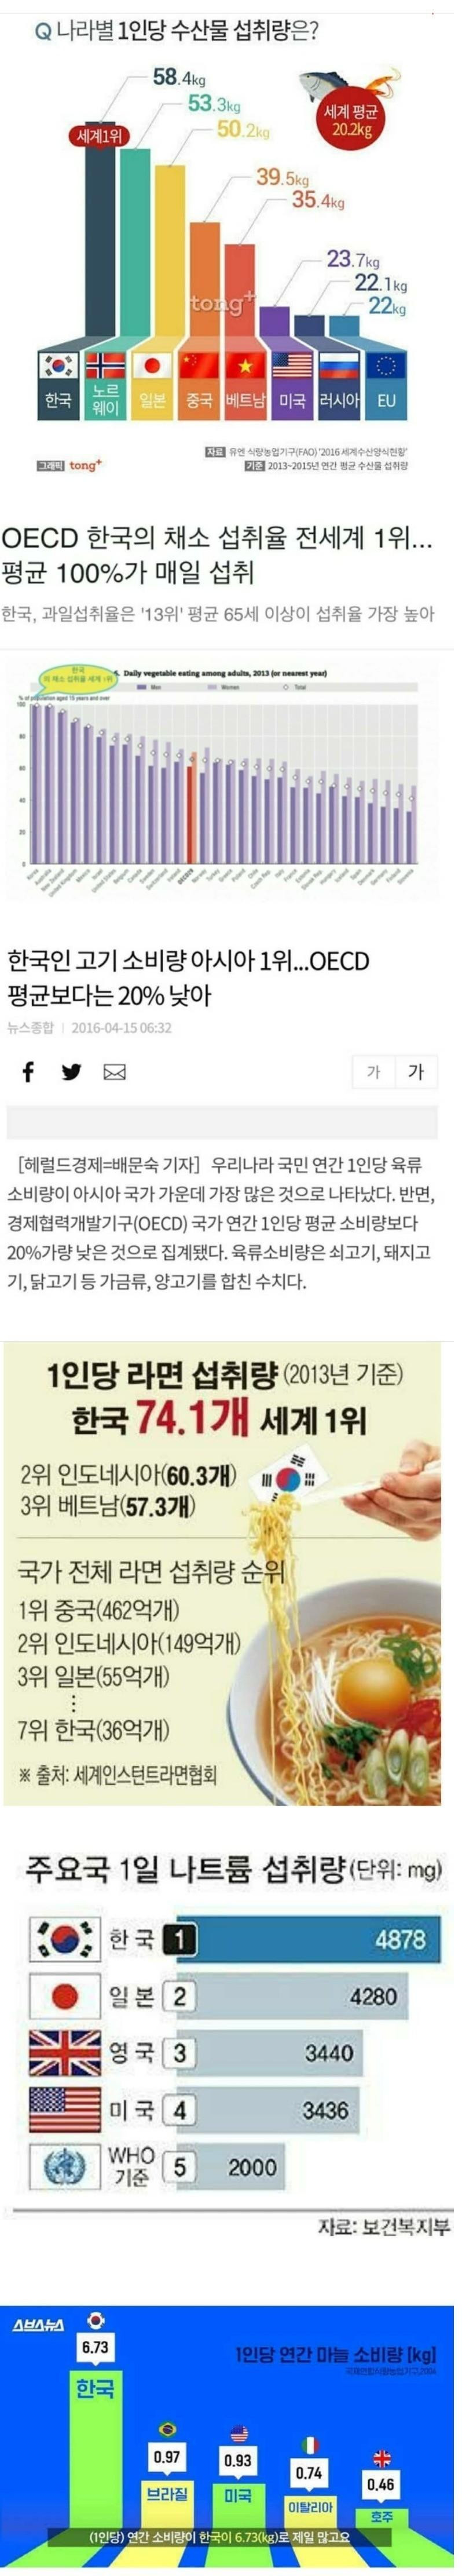 썸네일-한국이 섭취량 1등인 것들.JPG-이미지